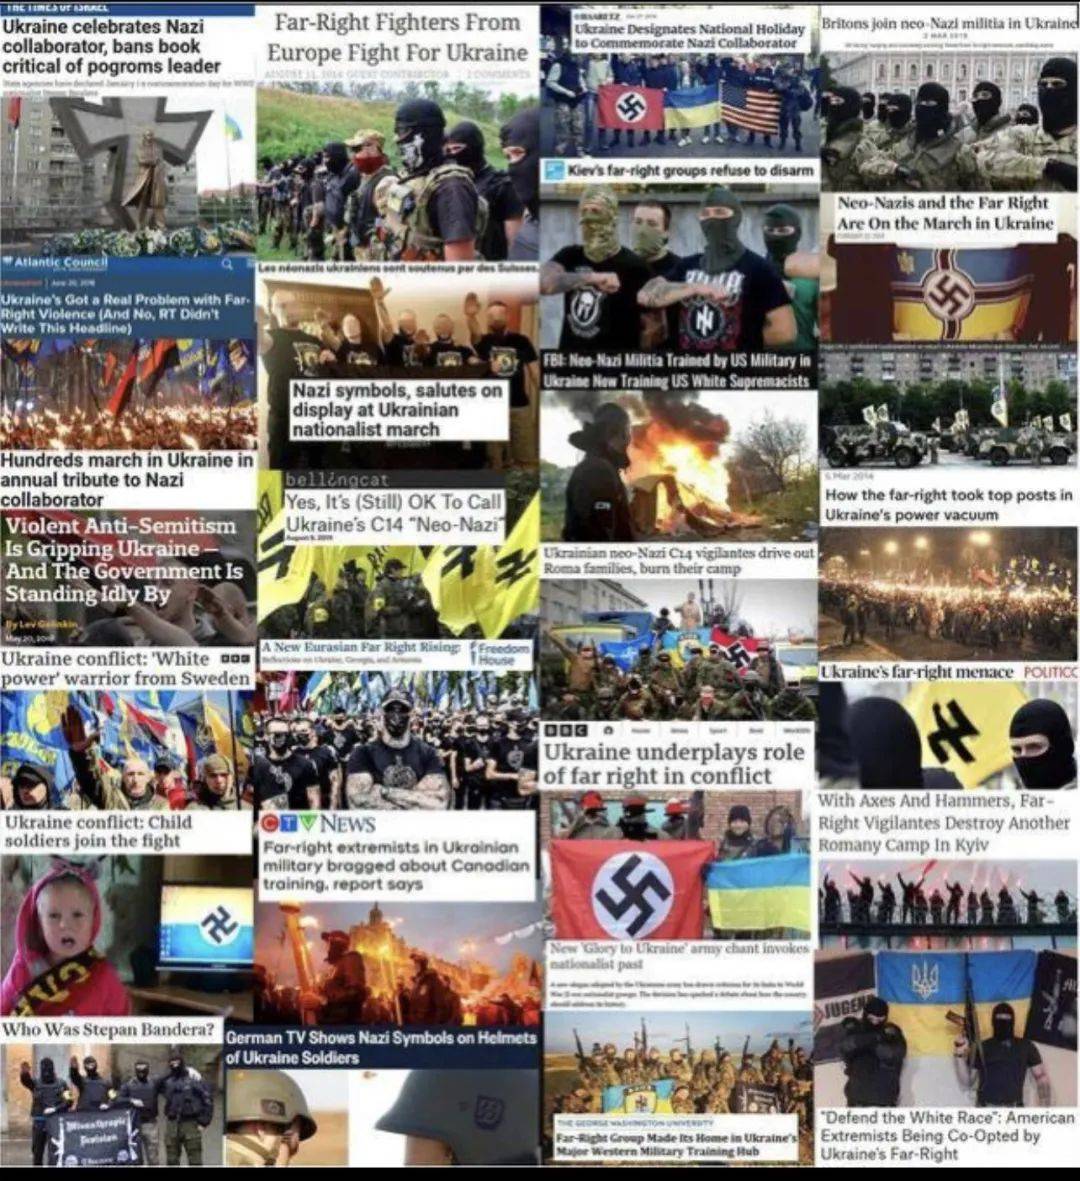 直指如今西方媒体为了反俄,在报道中对乌克兰新纳粹组织的恶行姑息